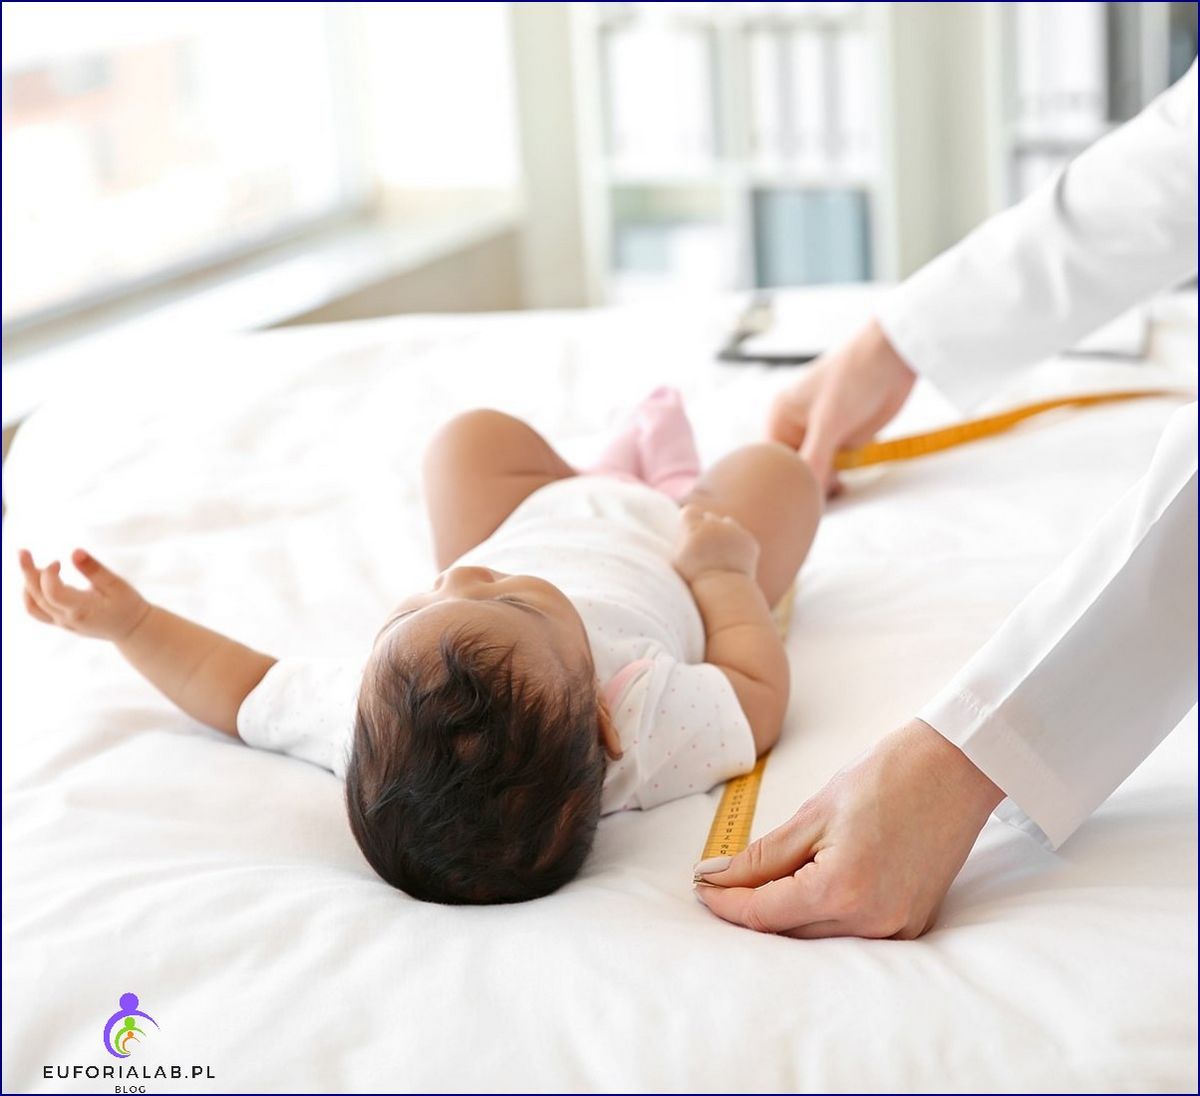 Prawidłowy rozwój niemowlaka - jak czytać siatki centylowe